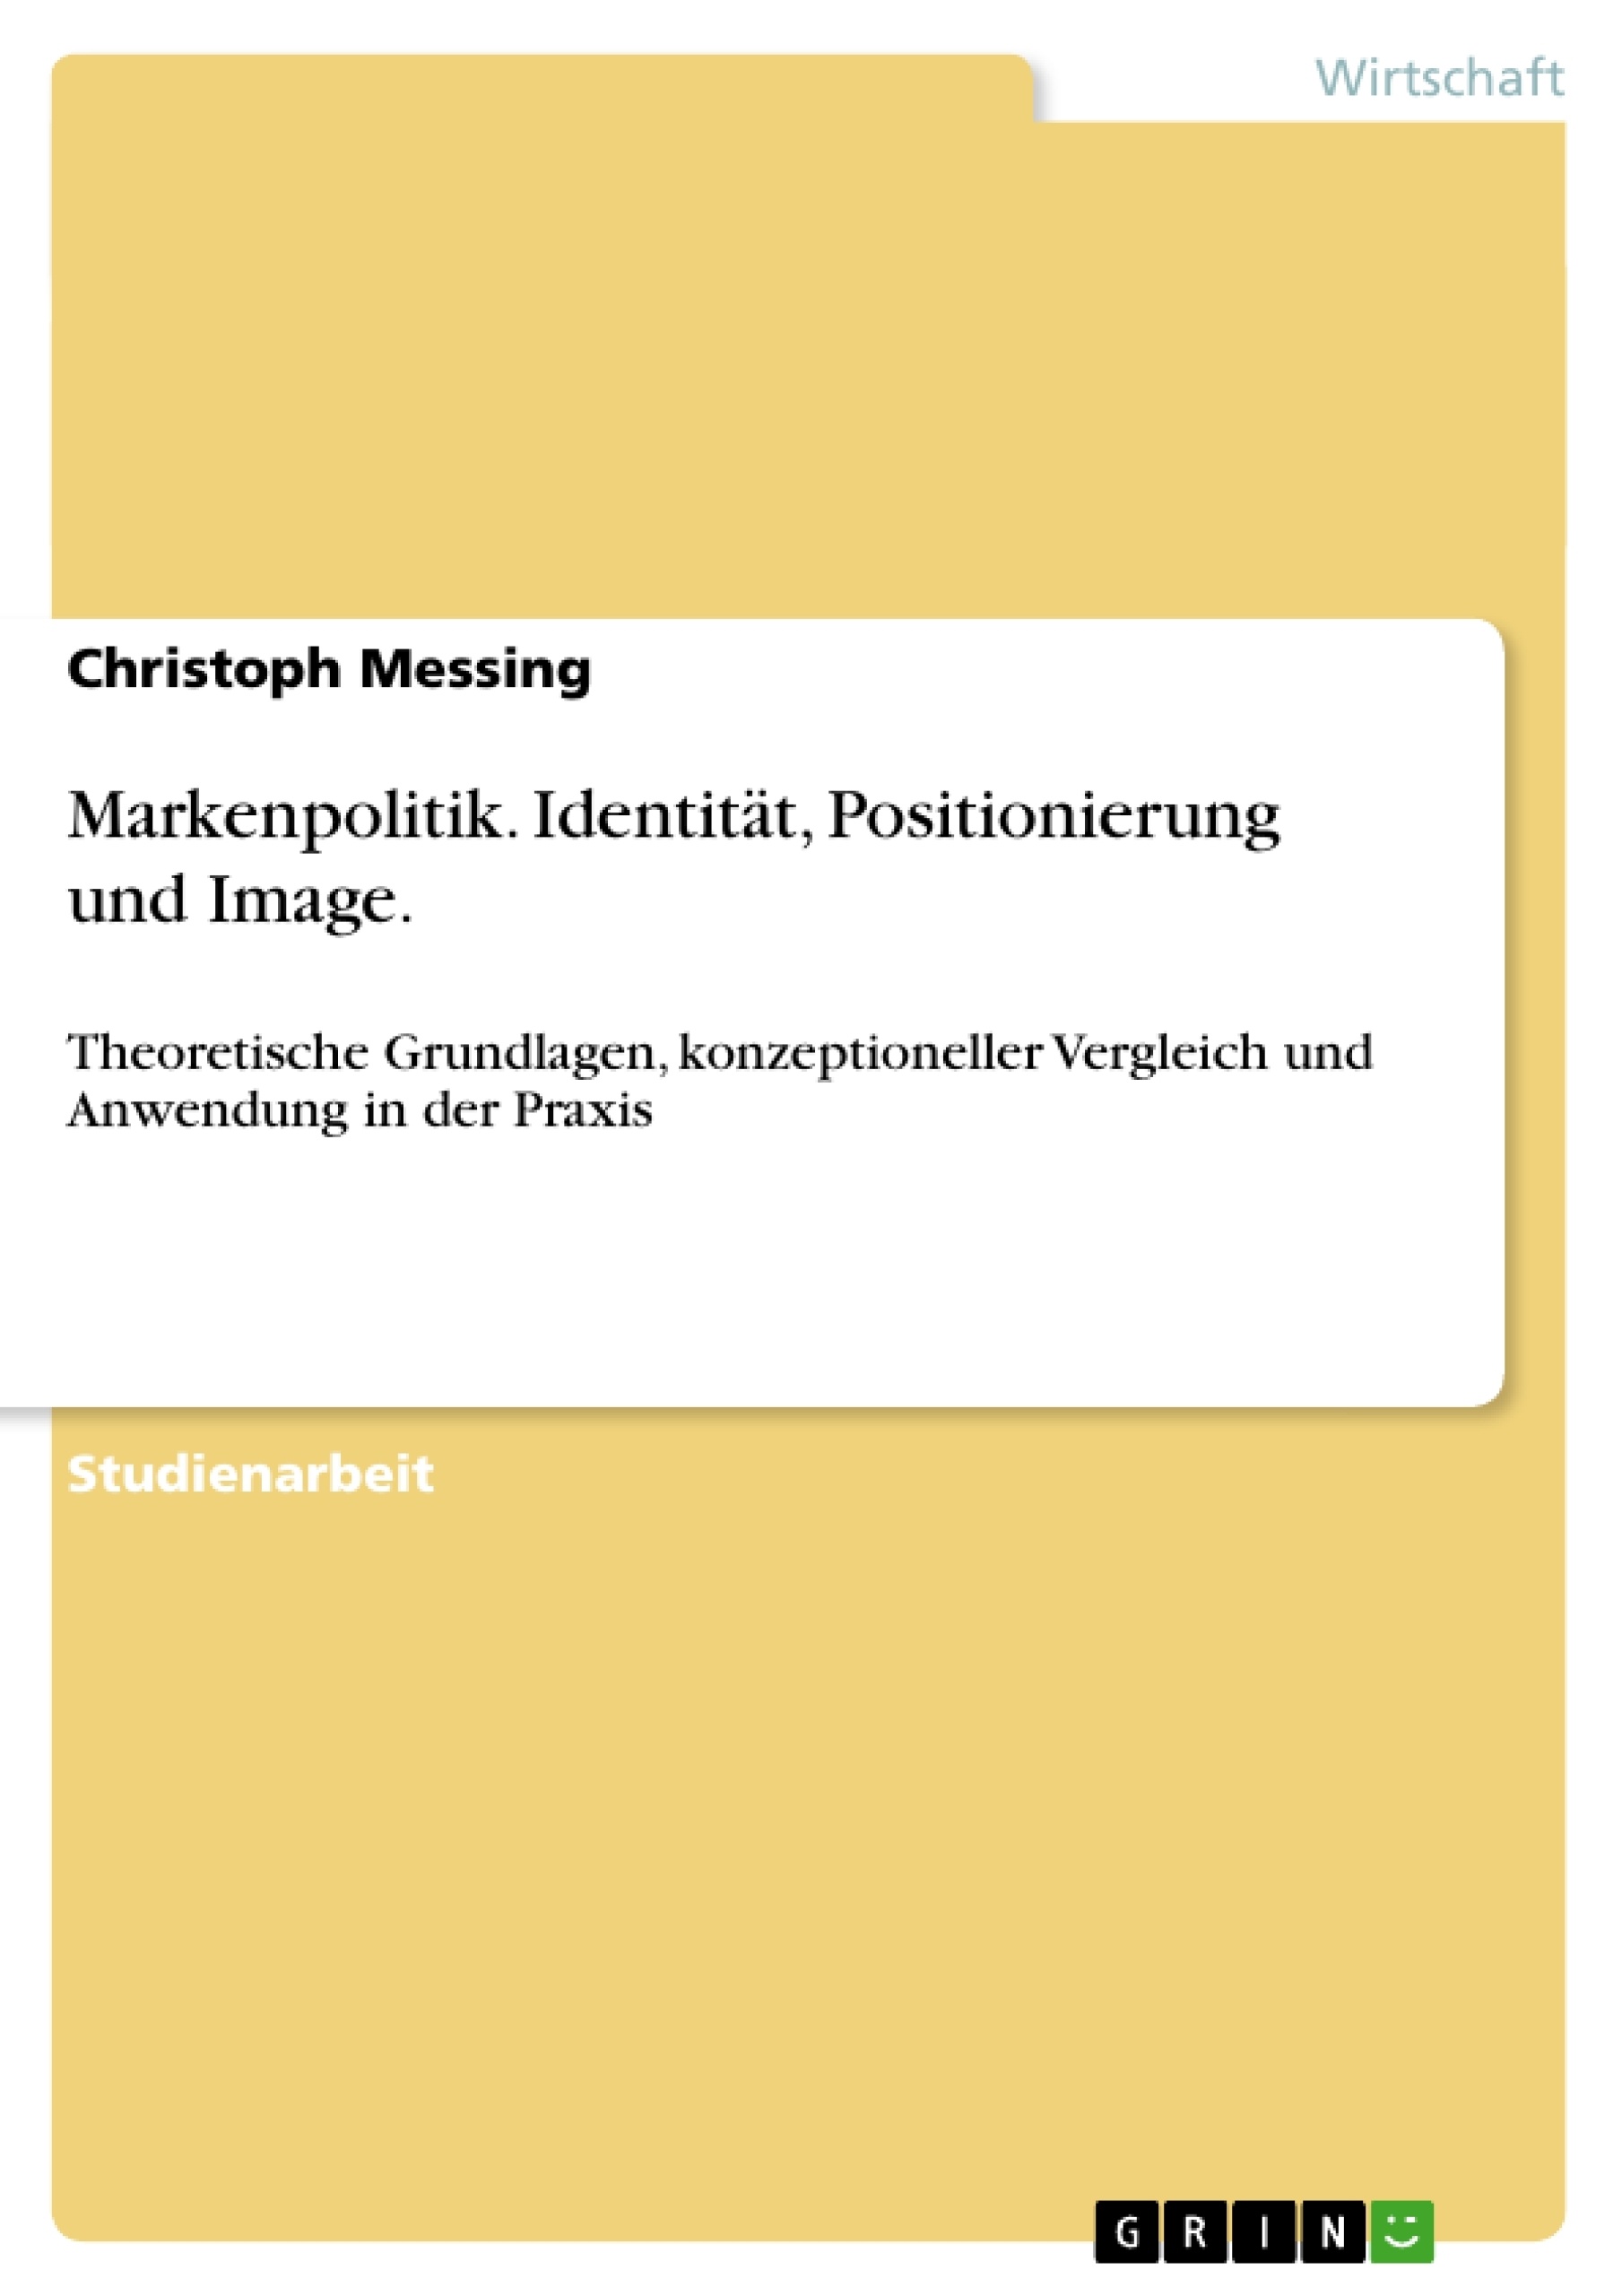 Title: Markenpolitik. Identität, Positionierung und Image.